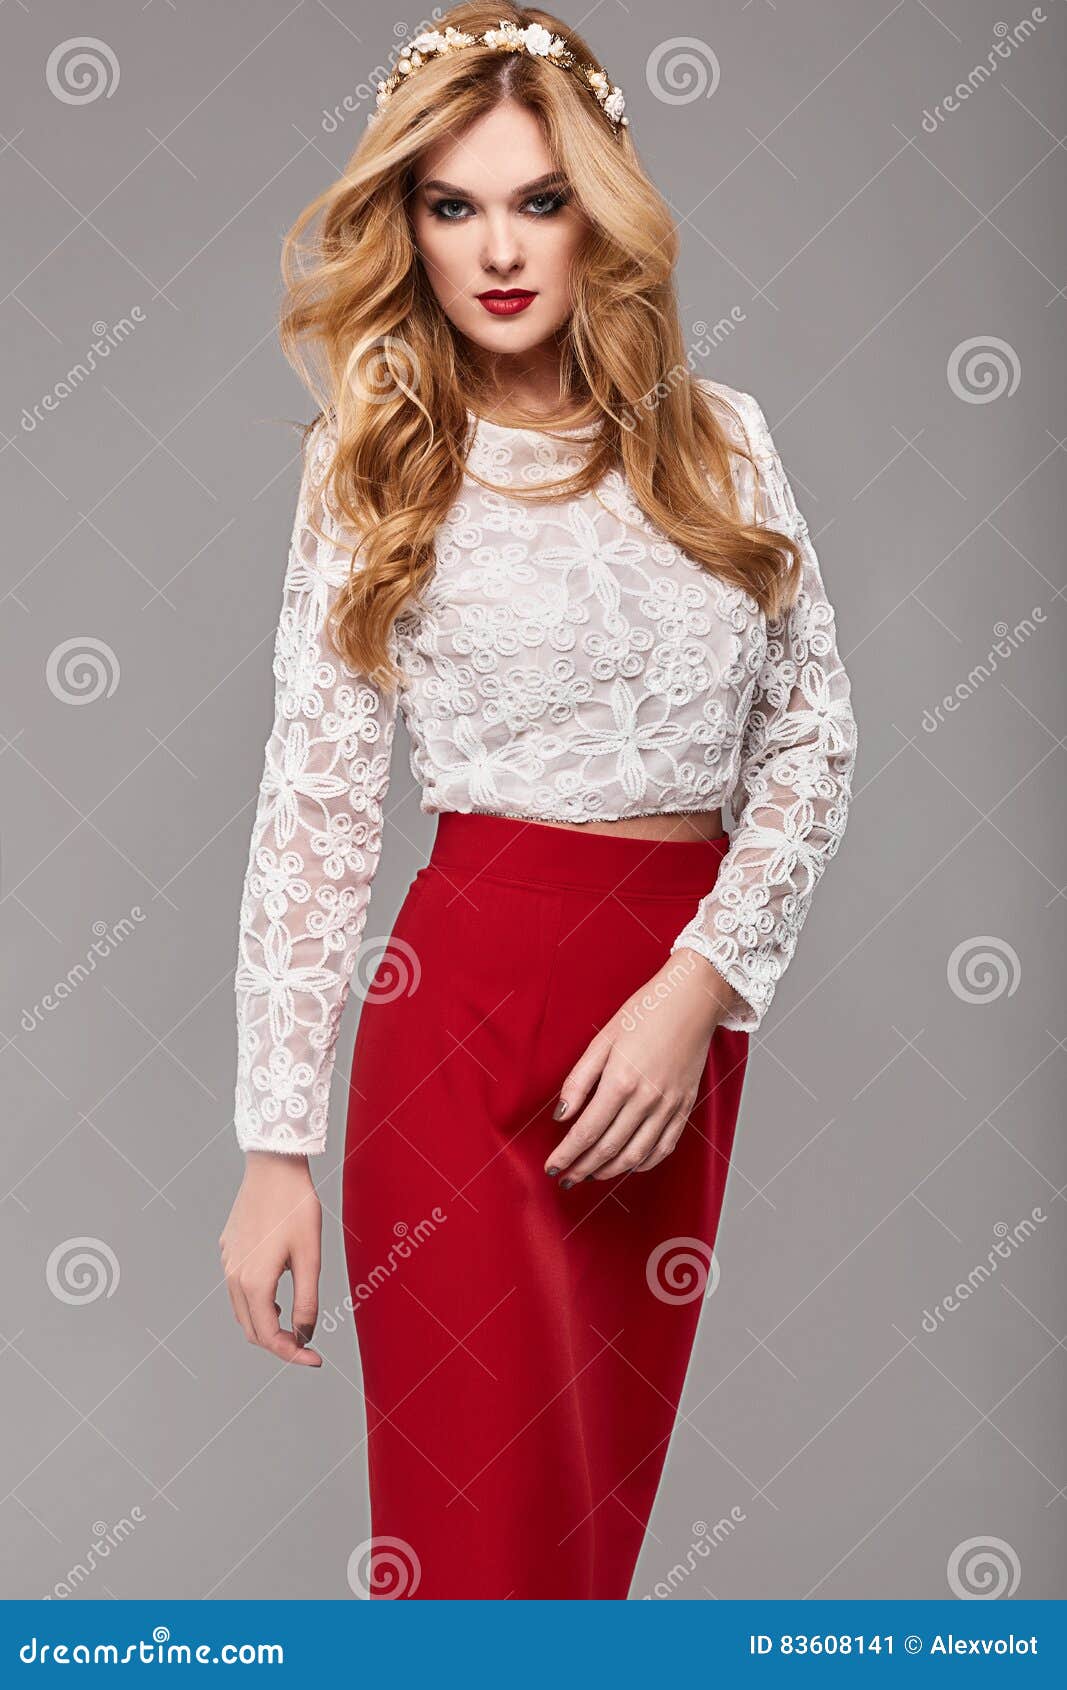 Elegante Hermosa En Vestido Rojo Y Blanco De Moda Imagen de archivo - Imagen de encanto, vistazo: 83608141